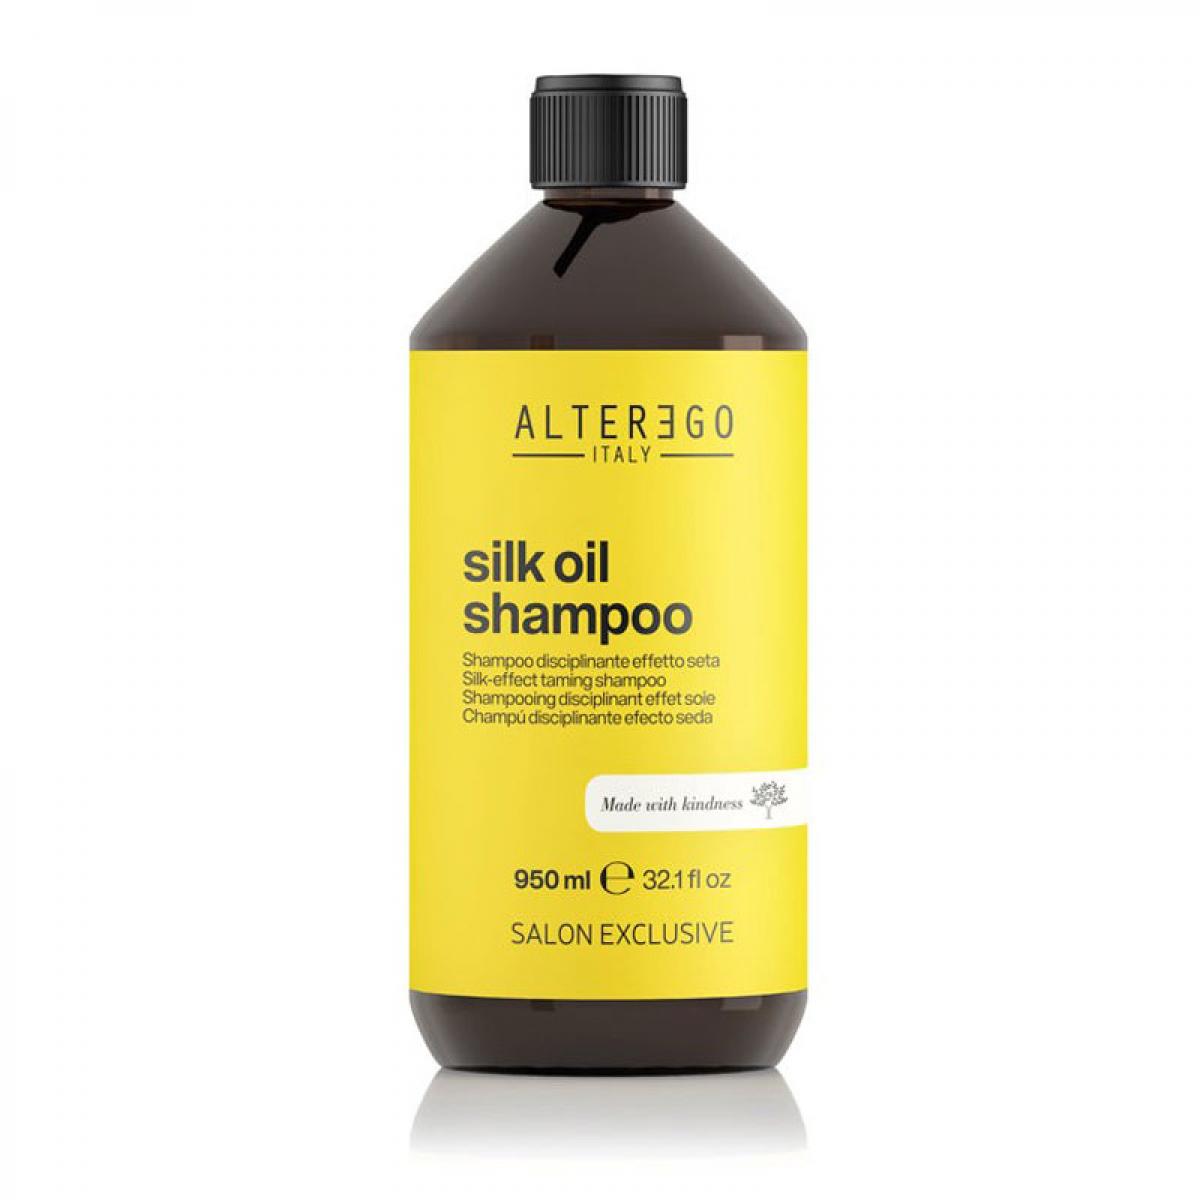 شامپو سیلک اویل - Silk oil shampoo